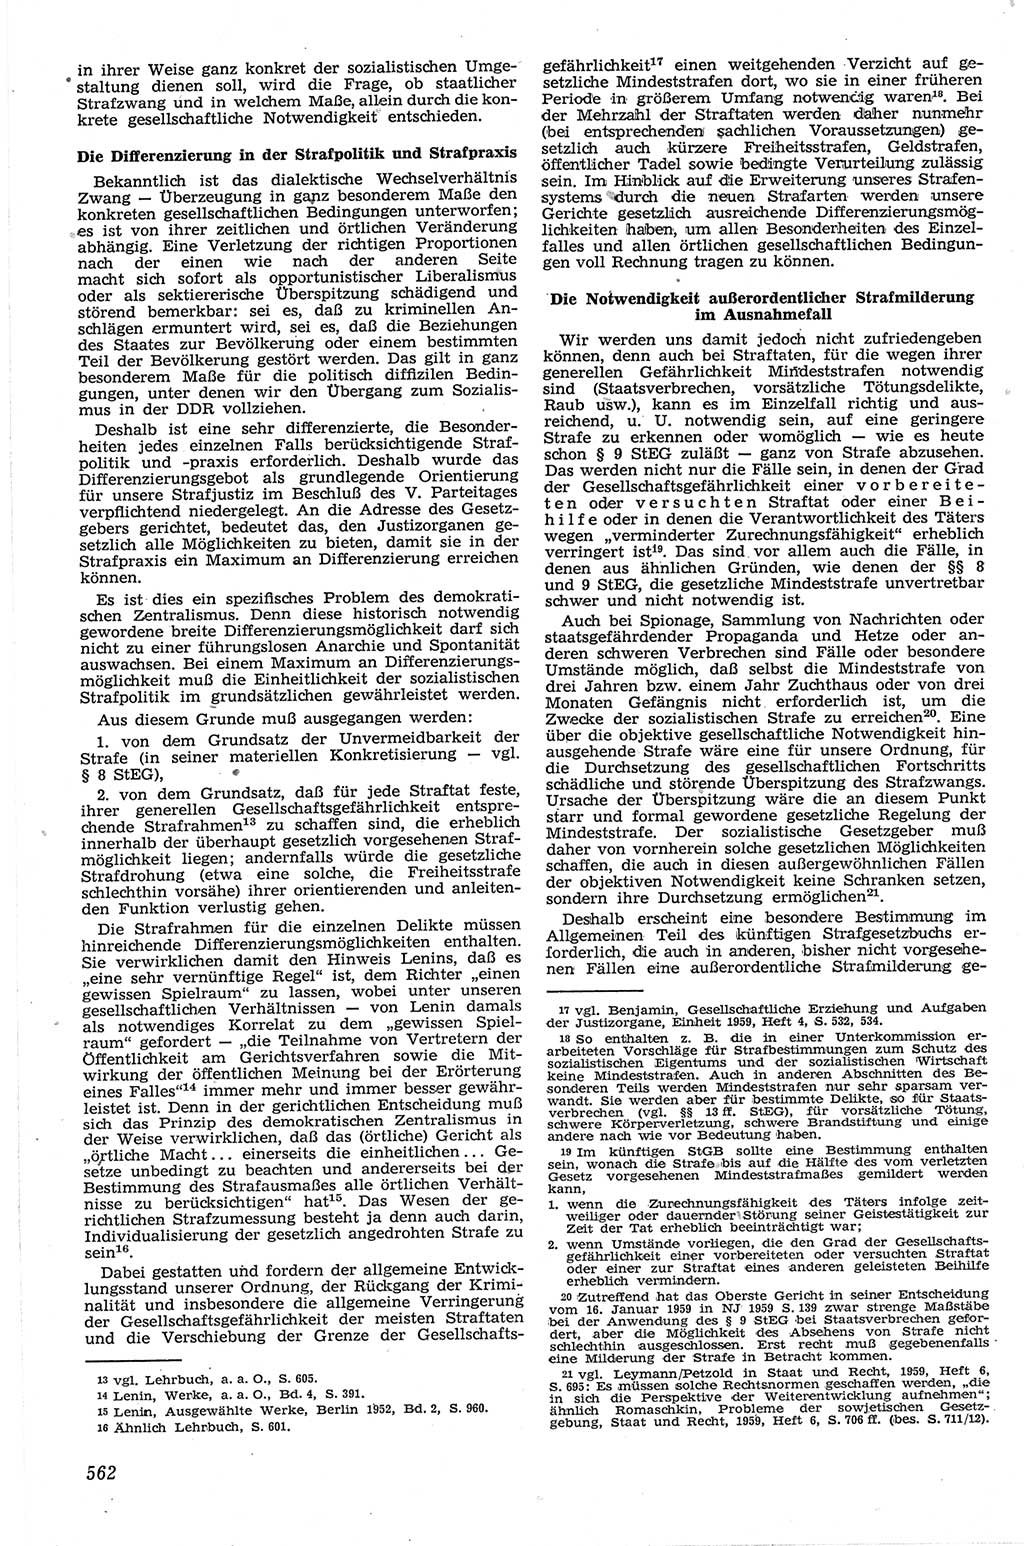 Neue Justiz (NJ), Zeitschrift für Recht und Rechtswissenschaft [Deutsche Demokratische Republik (DDR)], 13. Jahrgang 1959, Seite 562 (NJ DDR 1959, S. 562)